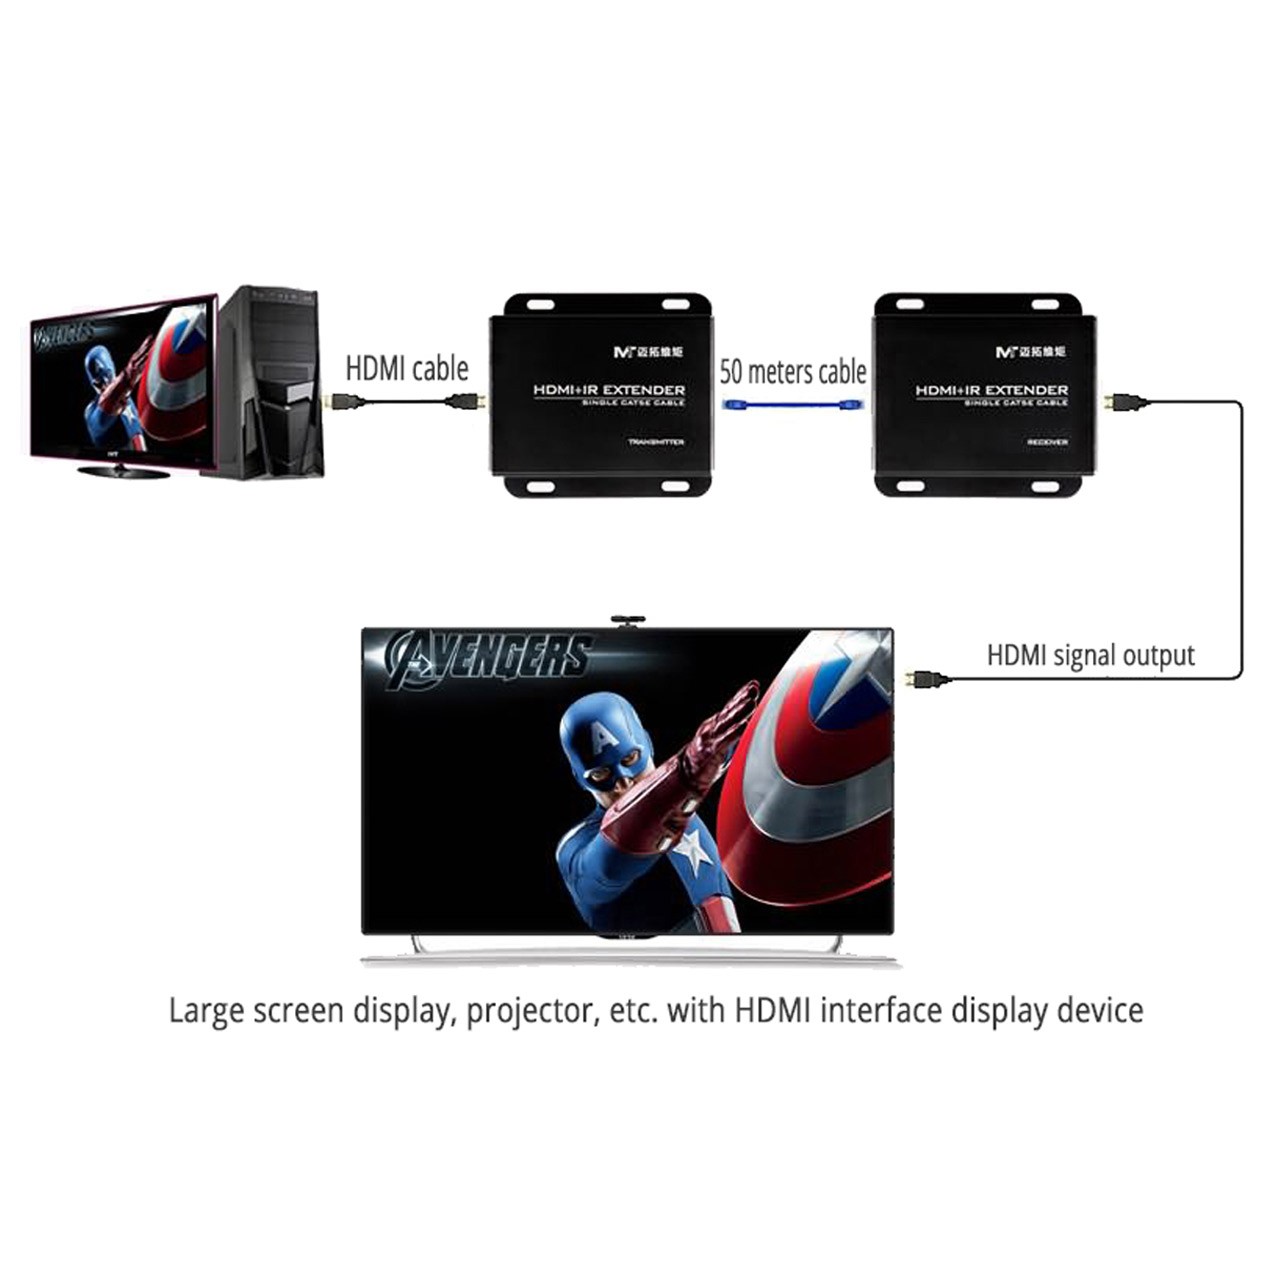 دستگاه افزایش طول HDMI تا فاصله 50 متری برند MT-VIKI با یک رشته کابل شبکه مدل ED05-IR با امکان کنترل از راه دور